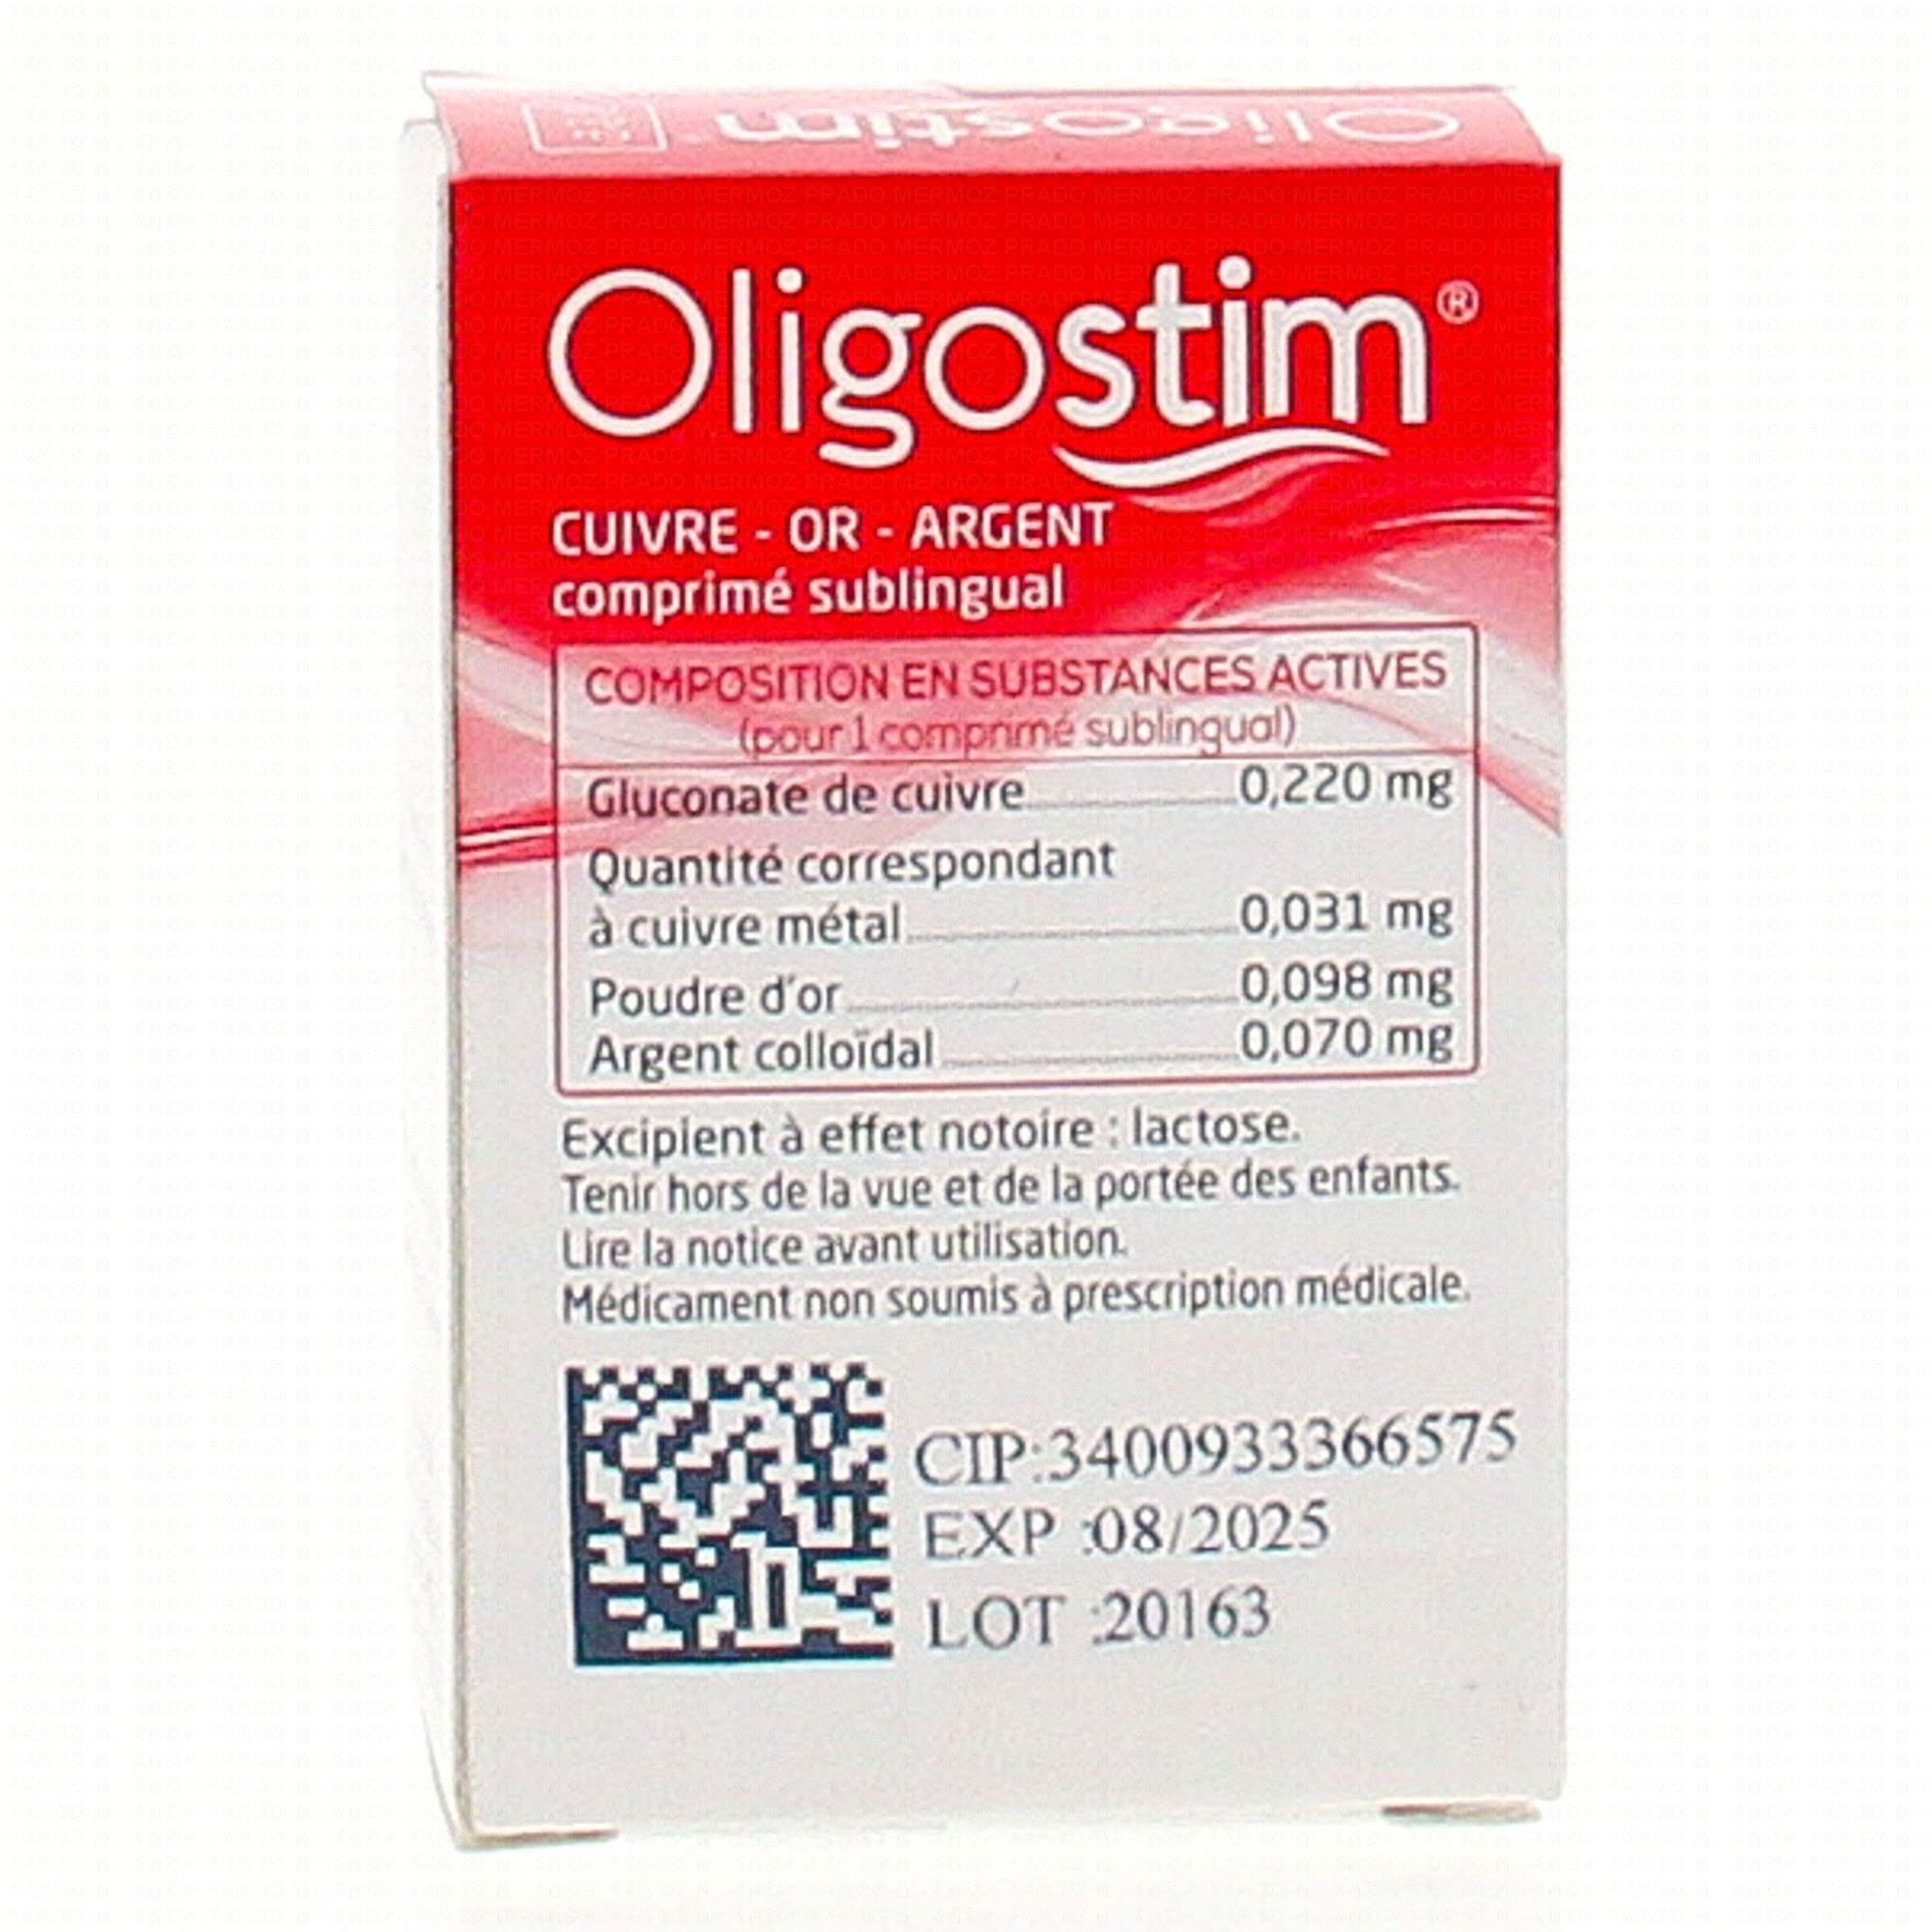 GRANIONS Oligostim cuivre or argent tube(s) de 40 comprimés - Médicament  homéopathique - Pharmacie Prado Mermoz